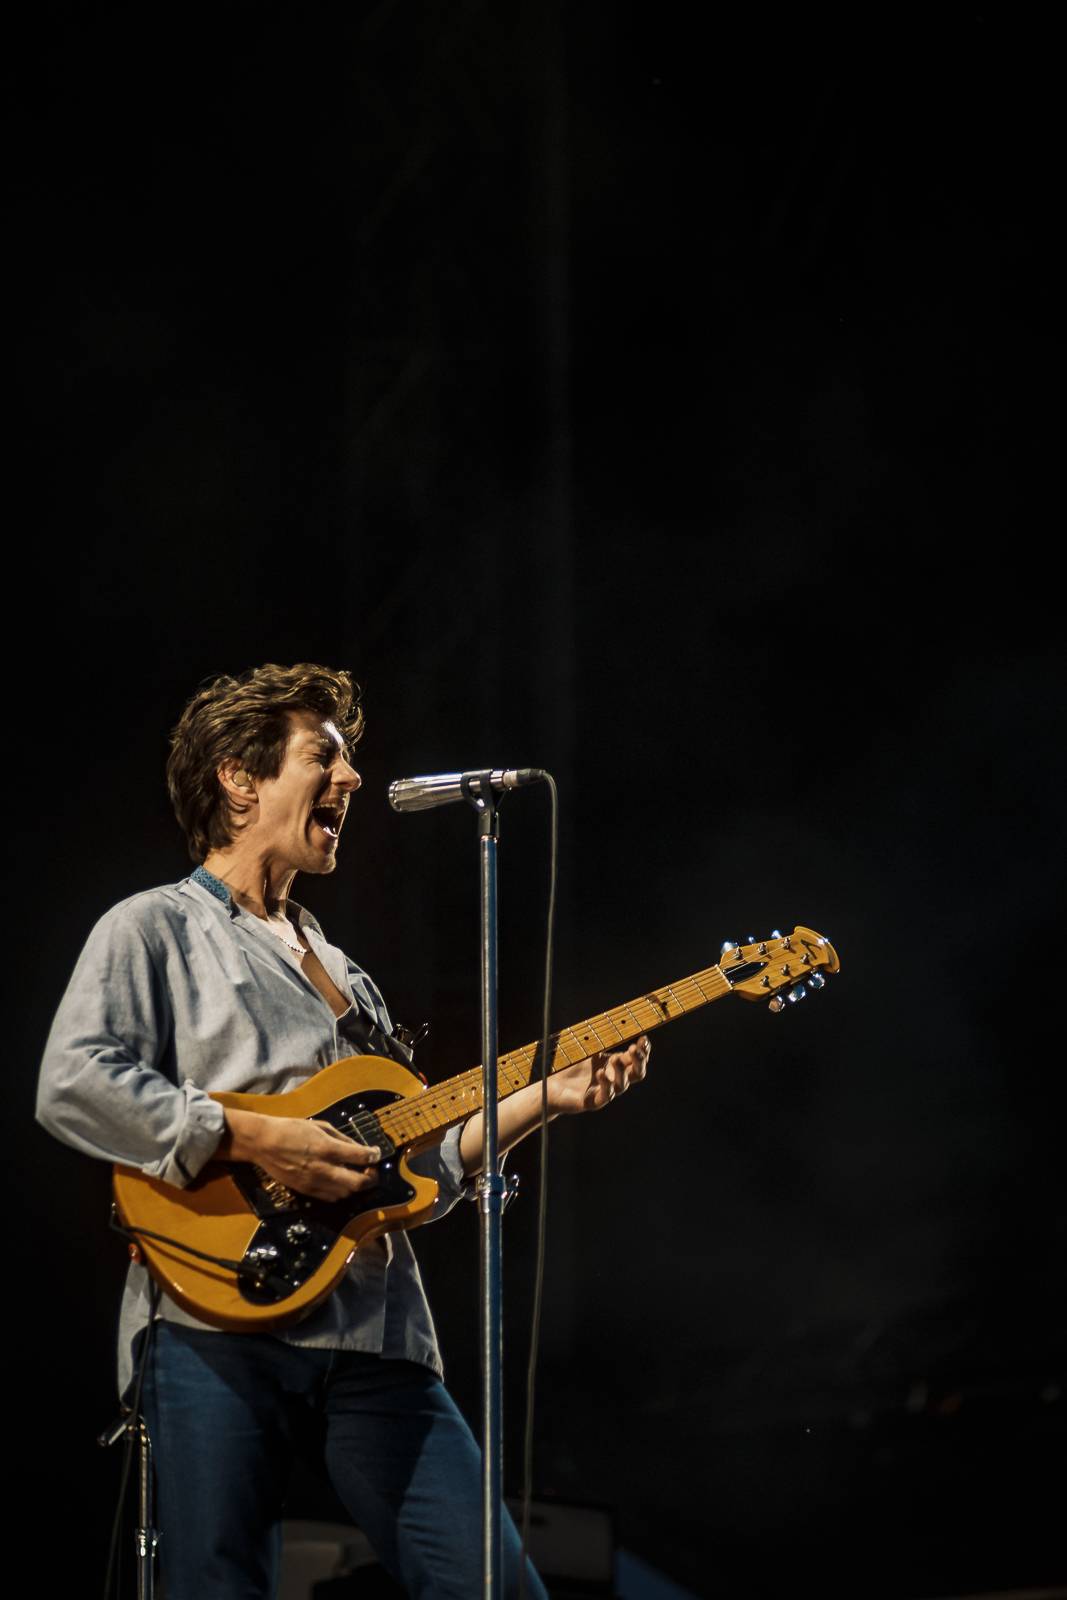 Protřepat, nemíchat! Arctic Monkeys předvedli v Praze show jako vystřiženou ze 70. let